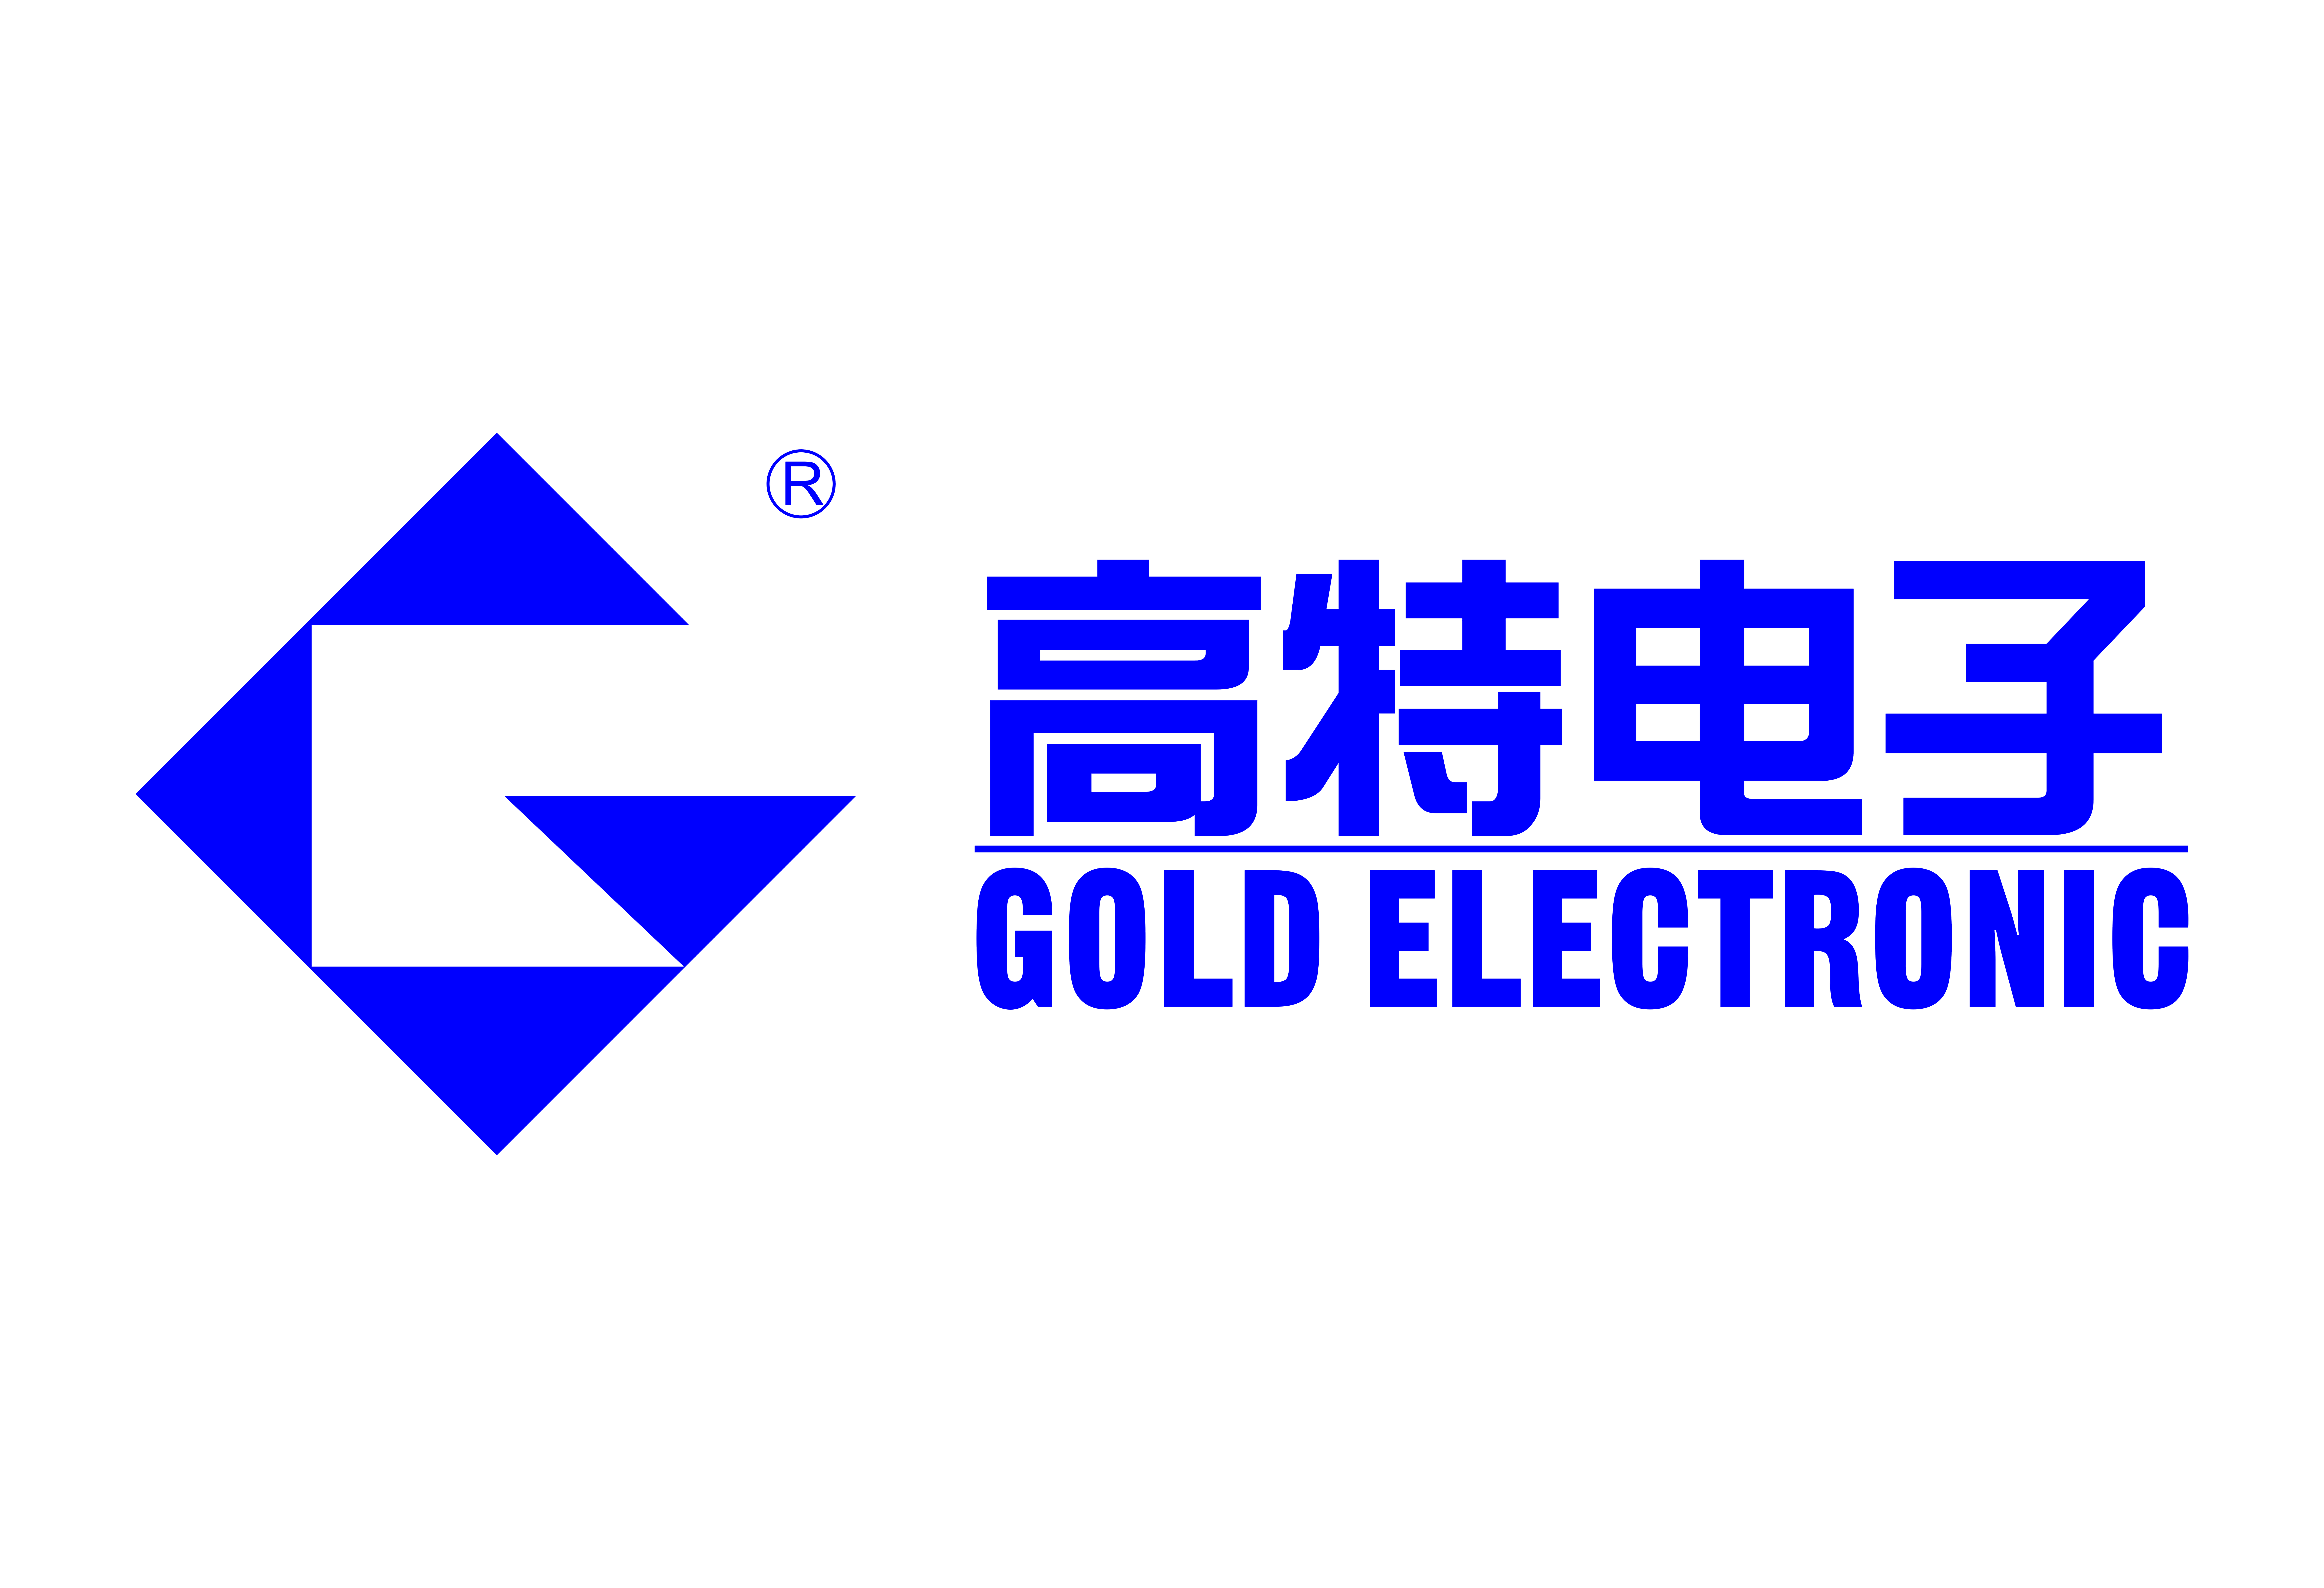 杭州高特电子设备股份有限公司